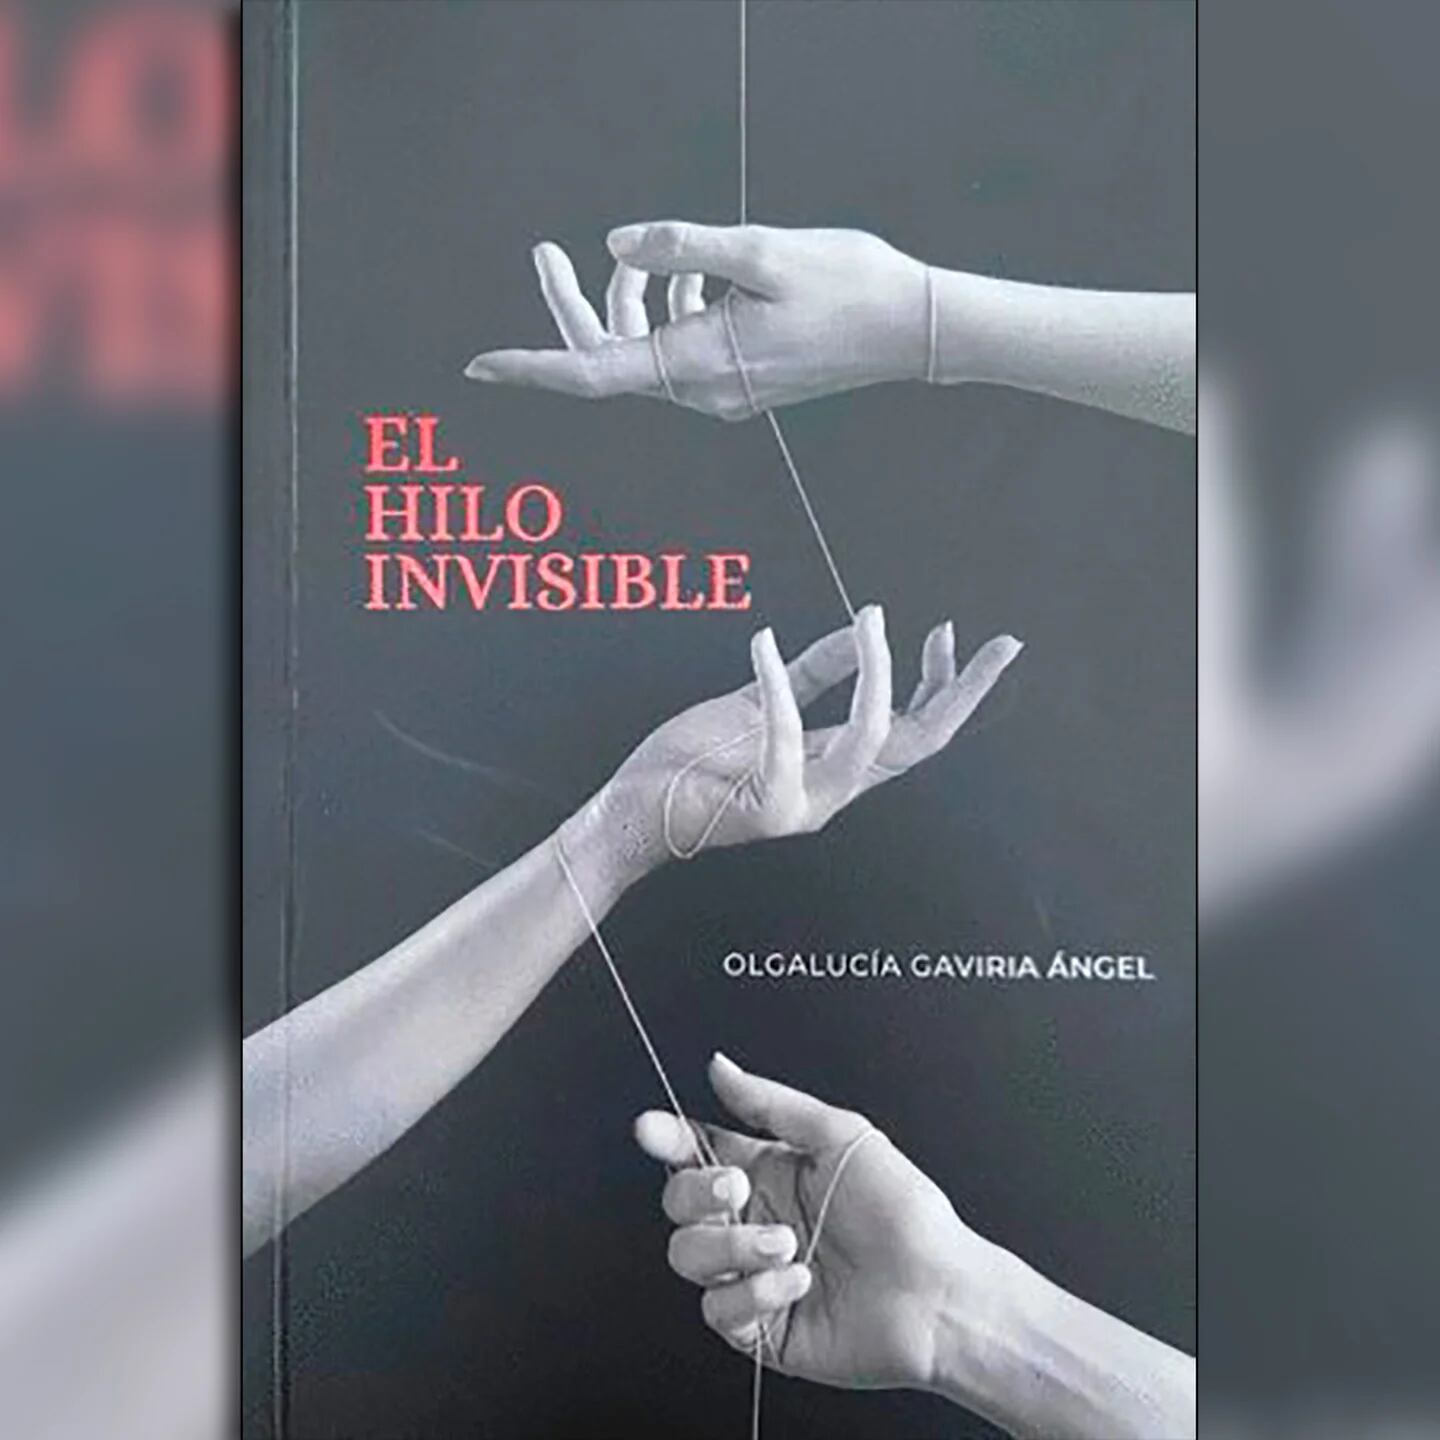 El Hilo Invisible by Olgalucía Gaviria Angel - Audiobook 